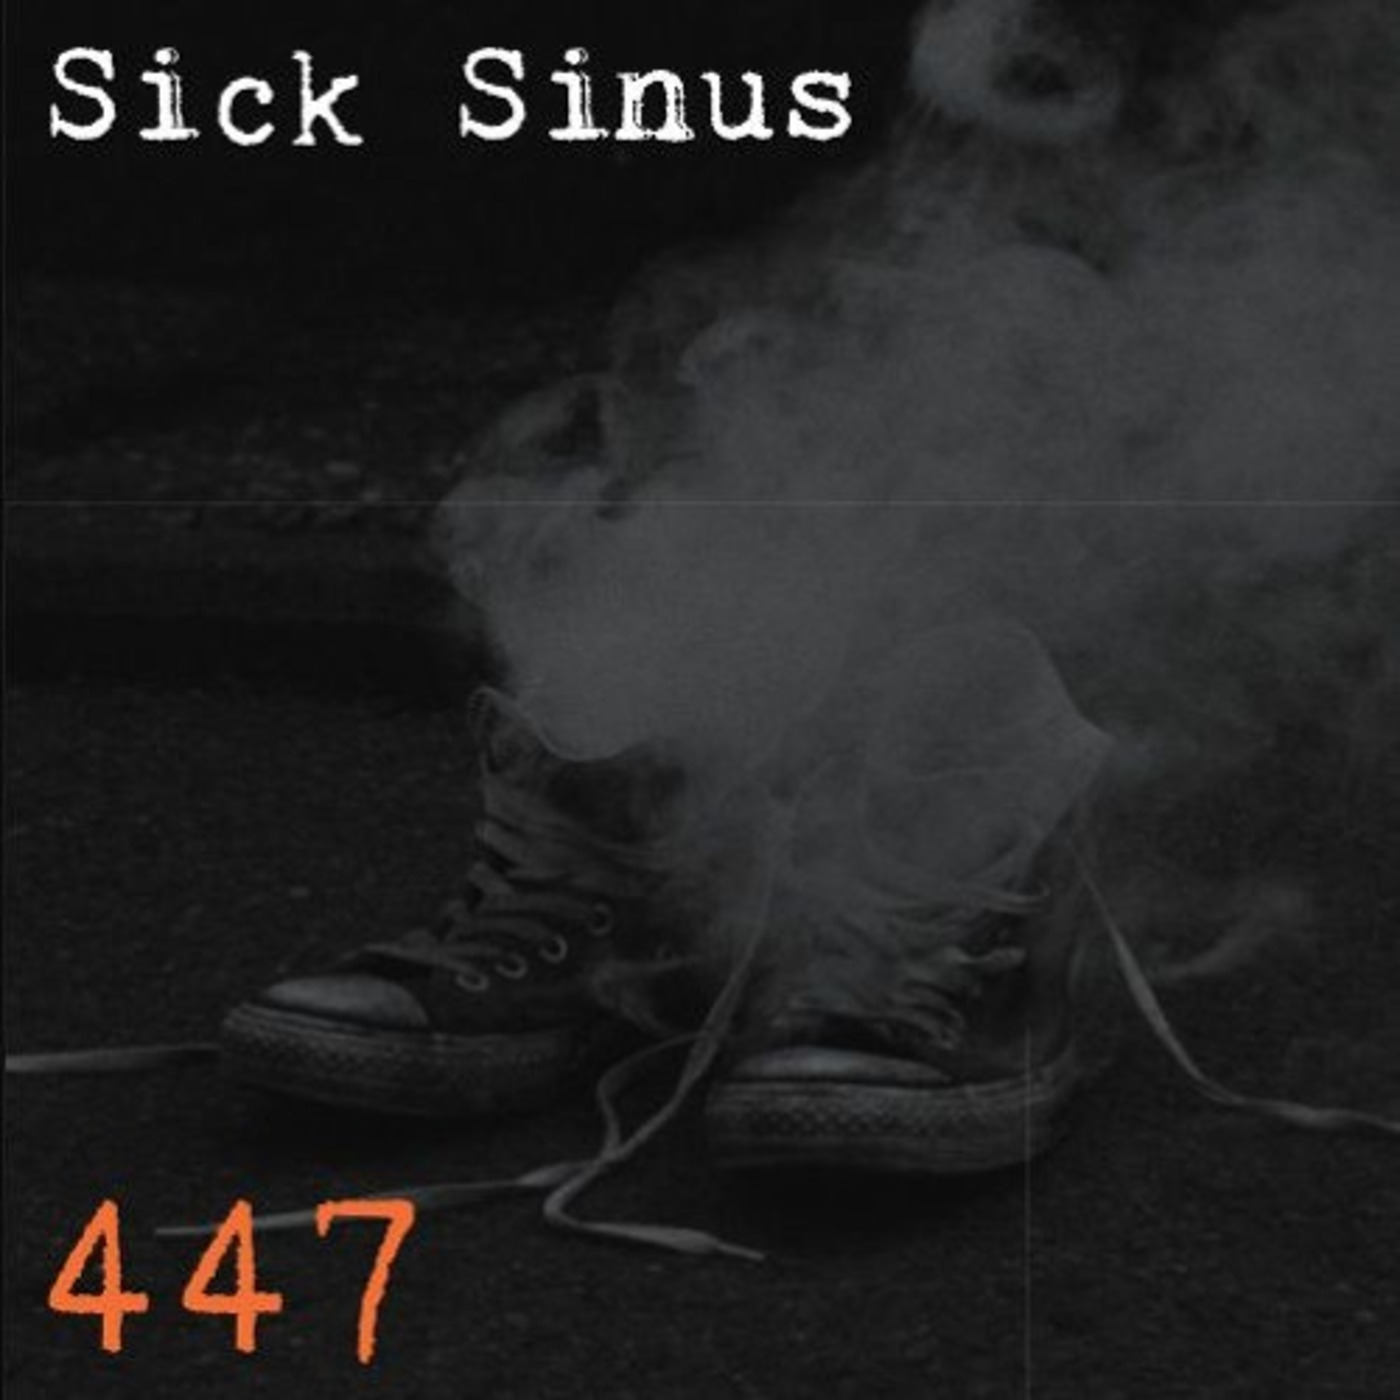 Sick Sinus - We are Sick Sinus